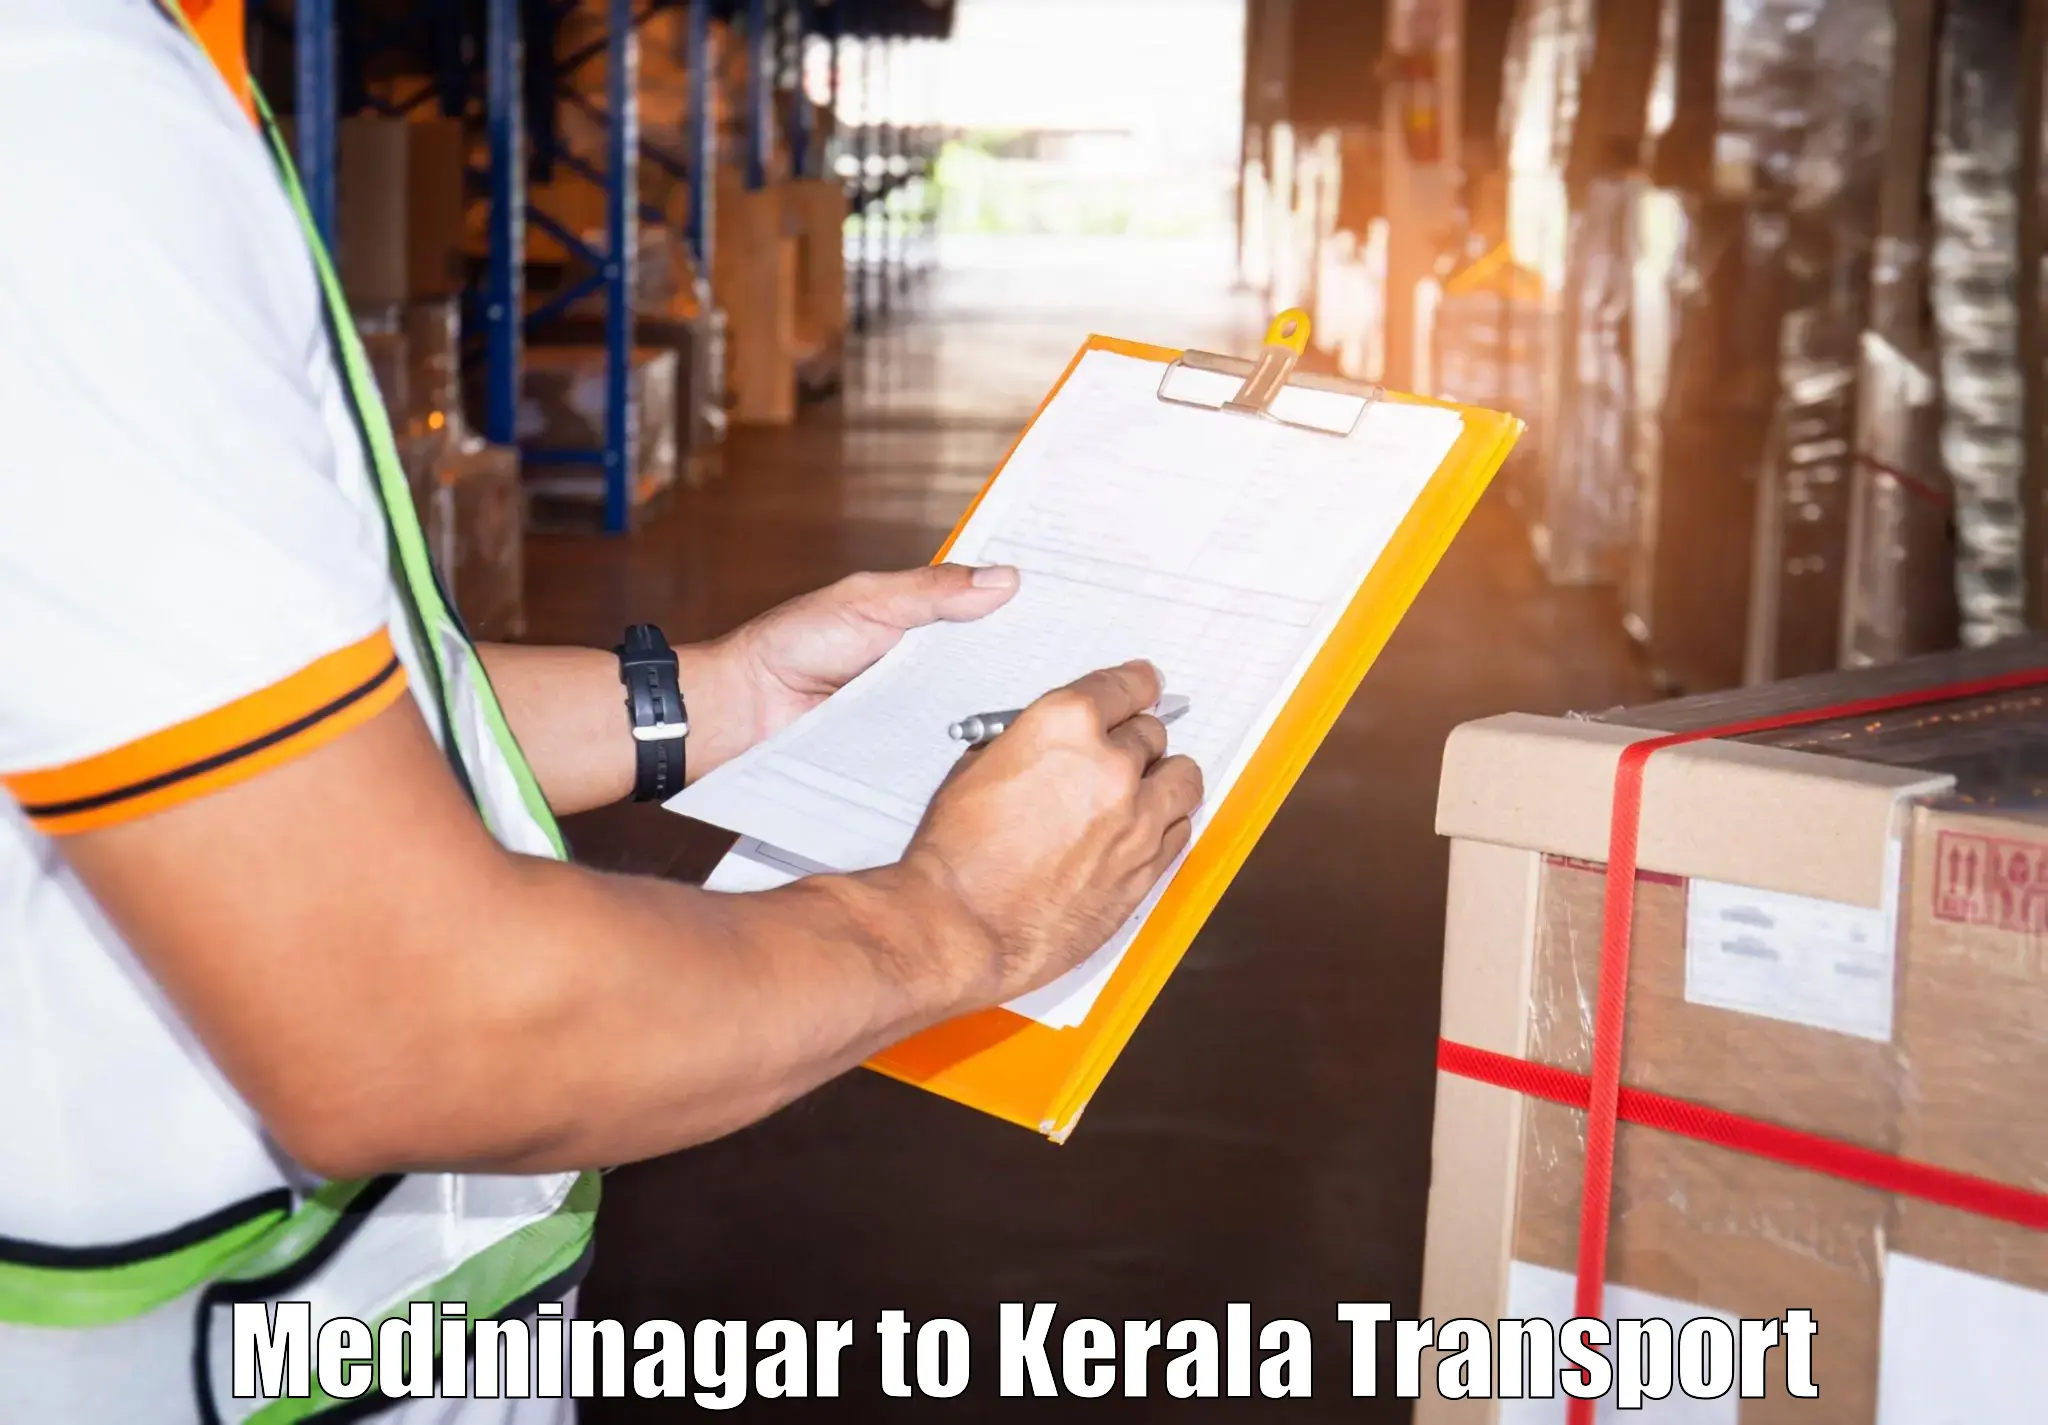 Express transport services Medininagar to Kannapuram